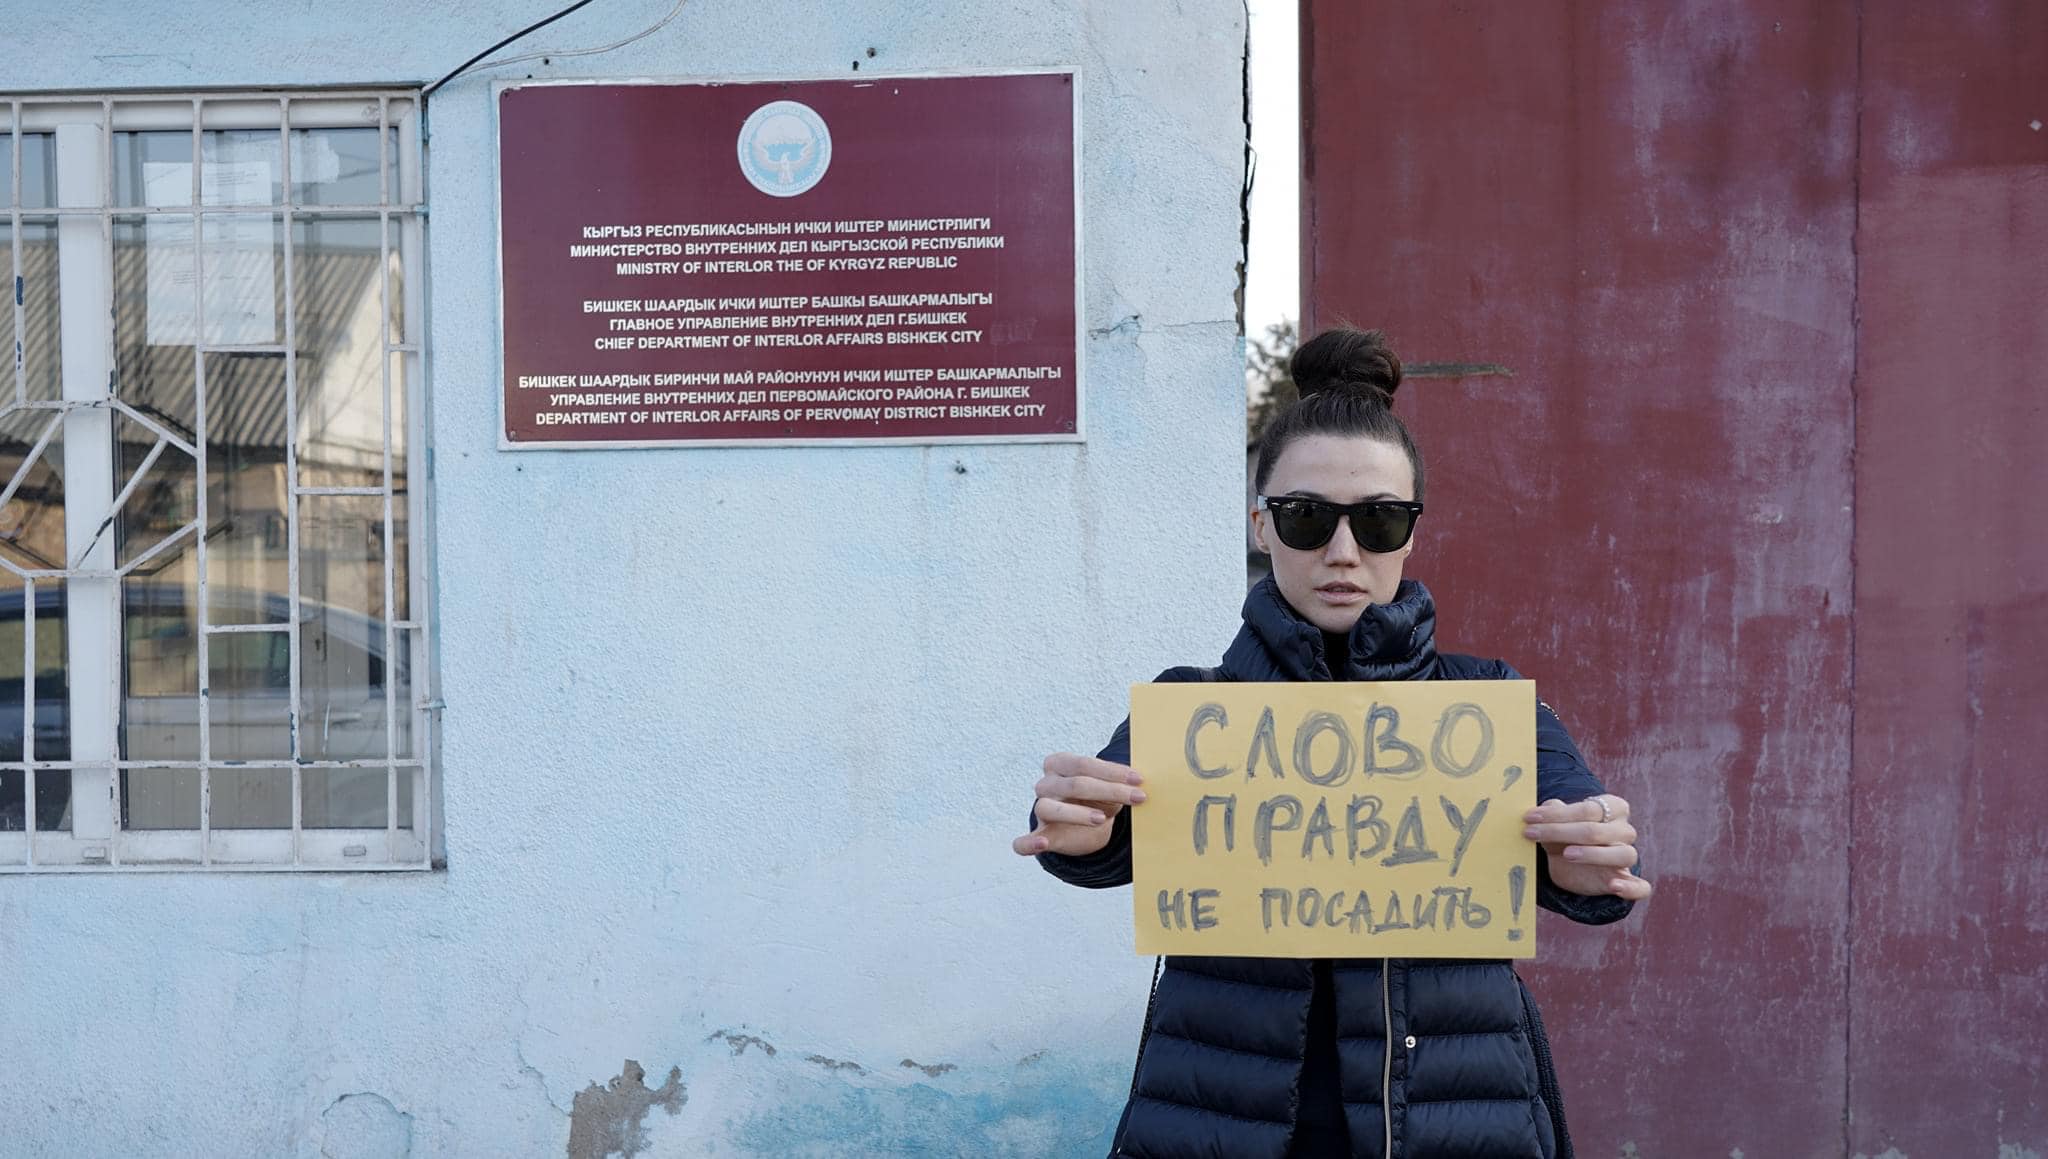 Активистку Кудайбердиеву обвинили в мелком хулиганстве после ссоры с фотожурналистом